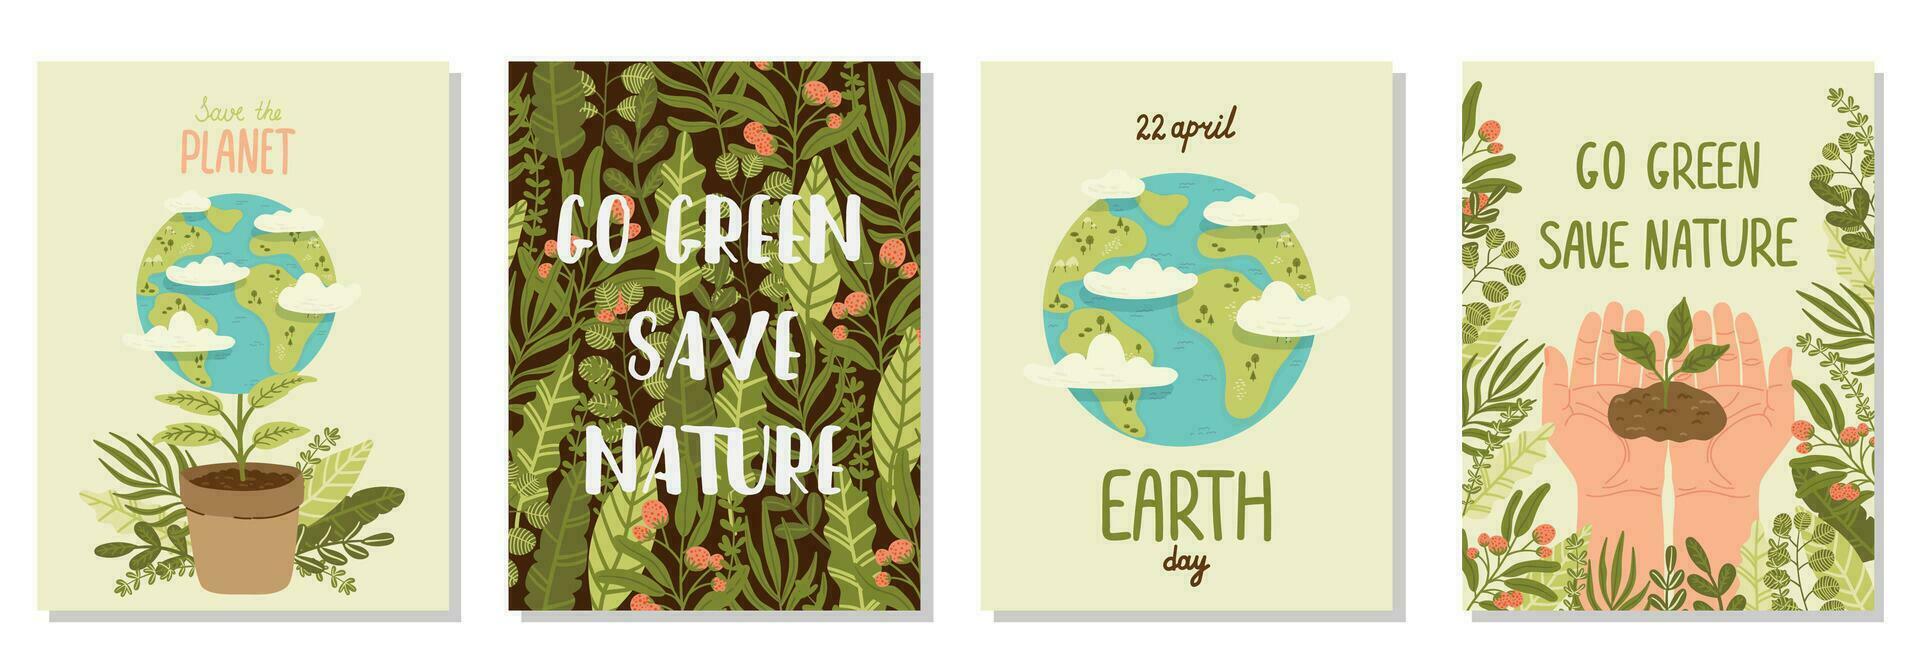 glücklich Erde Tag speichern Natur. Vektor Öko Illustration Sammlung zum Sozial Medien, Poster, Banner, Karte, Flyer auf das Thema von Speichern Planet, Mensch Hände schützen Erde